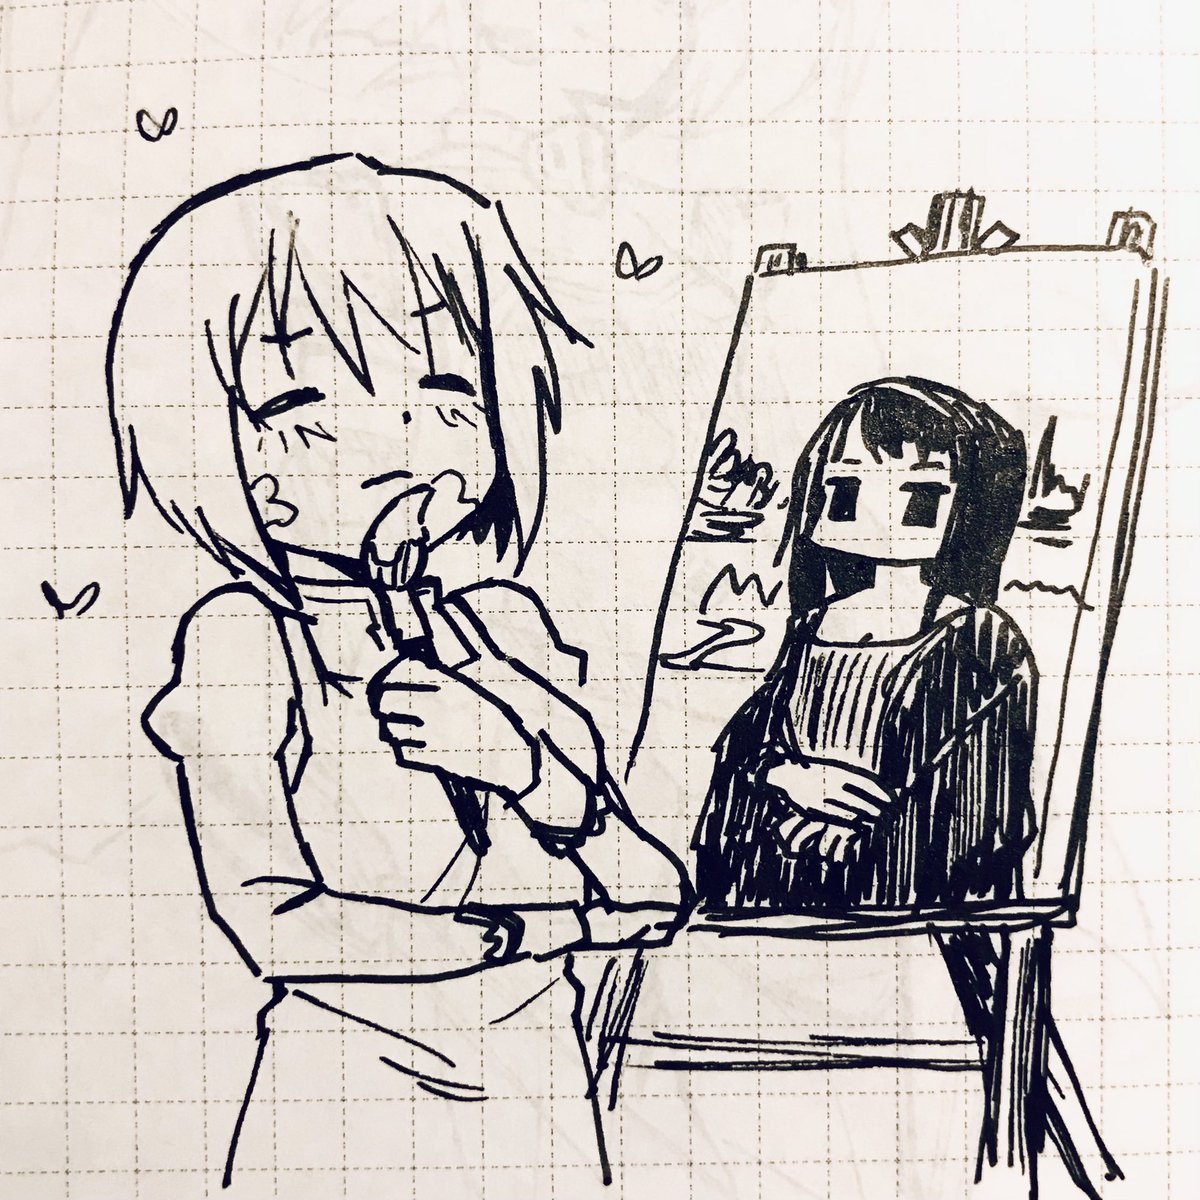 Sayaka painting her masterpiece~ 